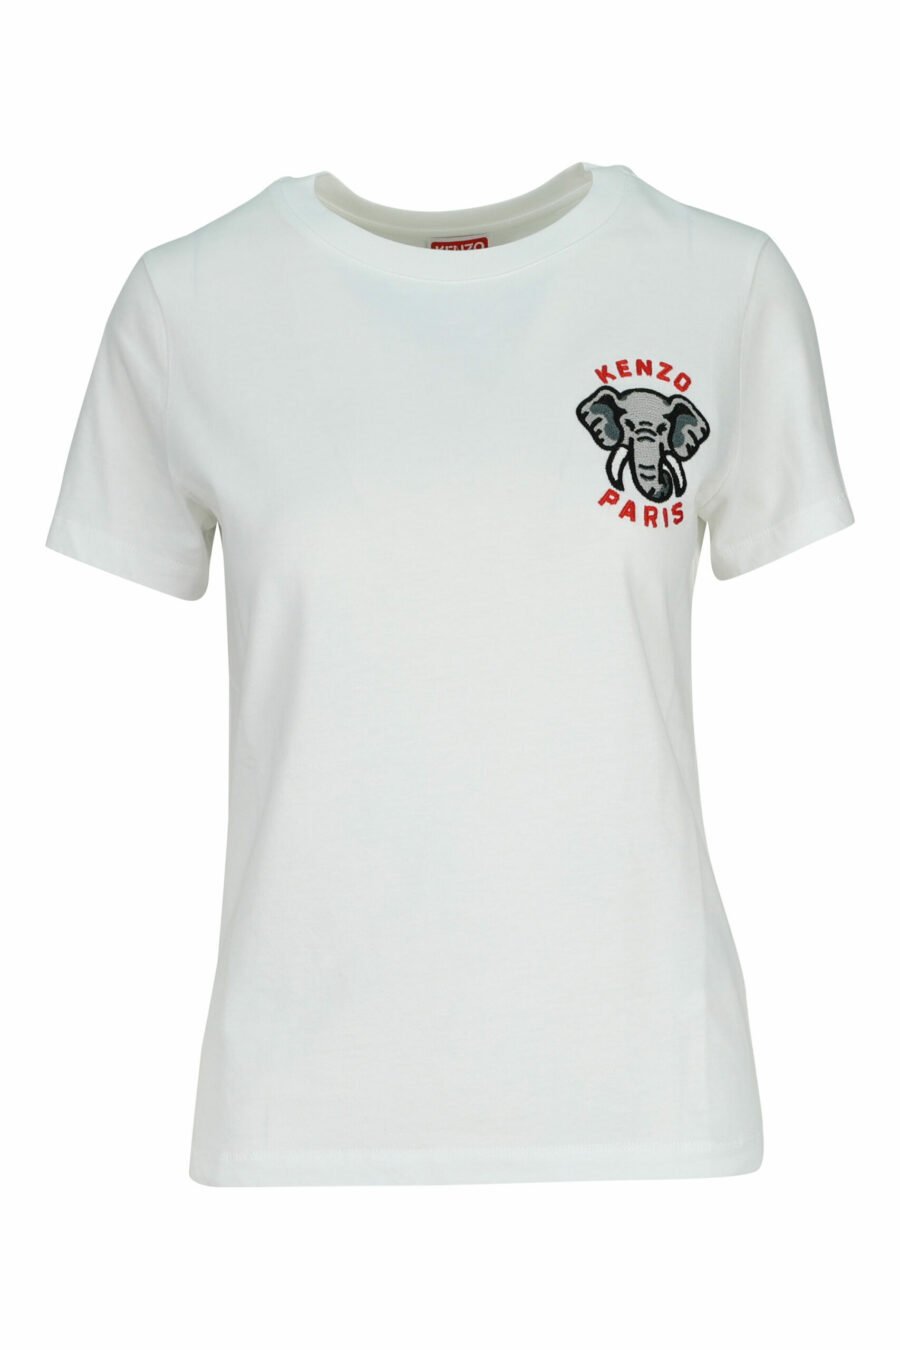 T-shirt blanc avec mini logo "kenzo elephant" - 3612230620117 2 scaled